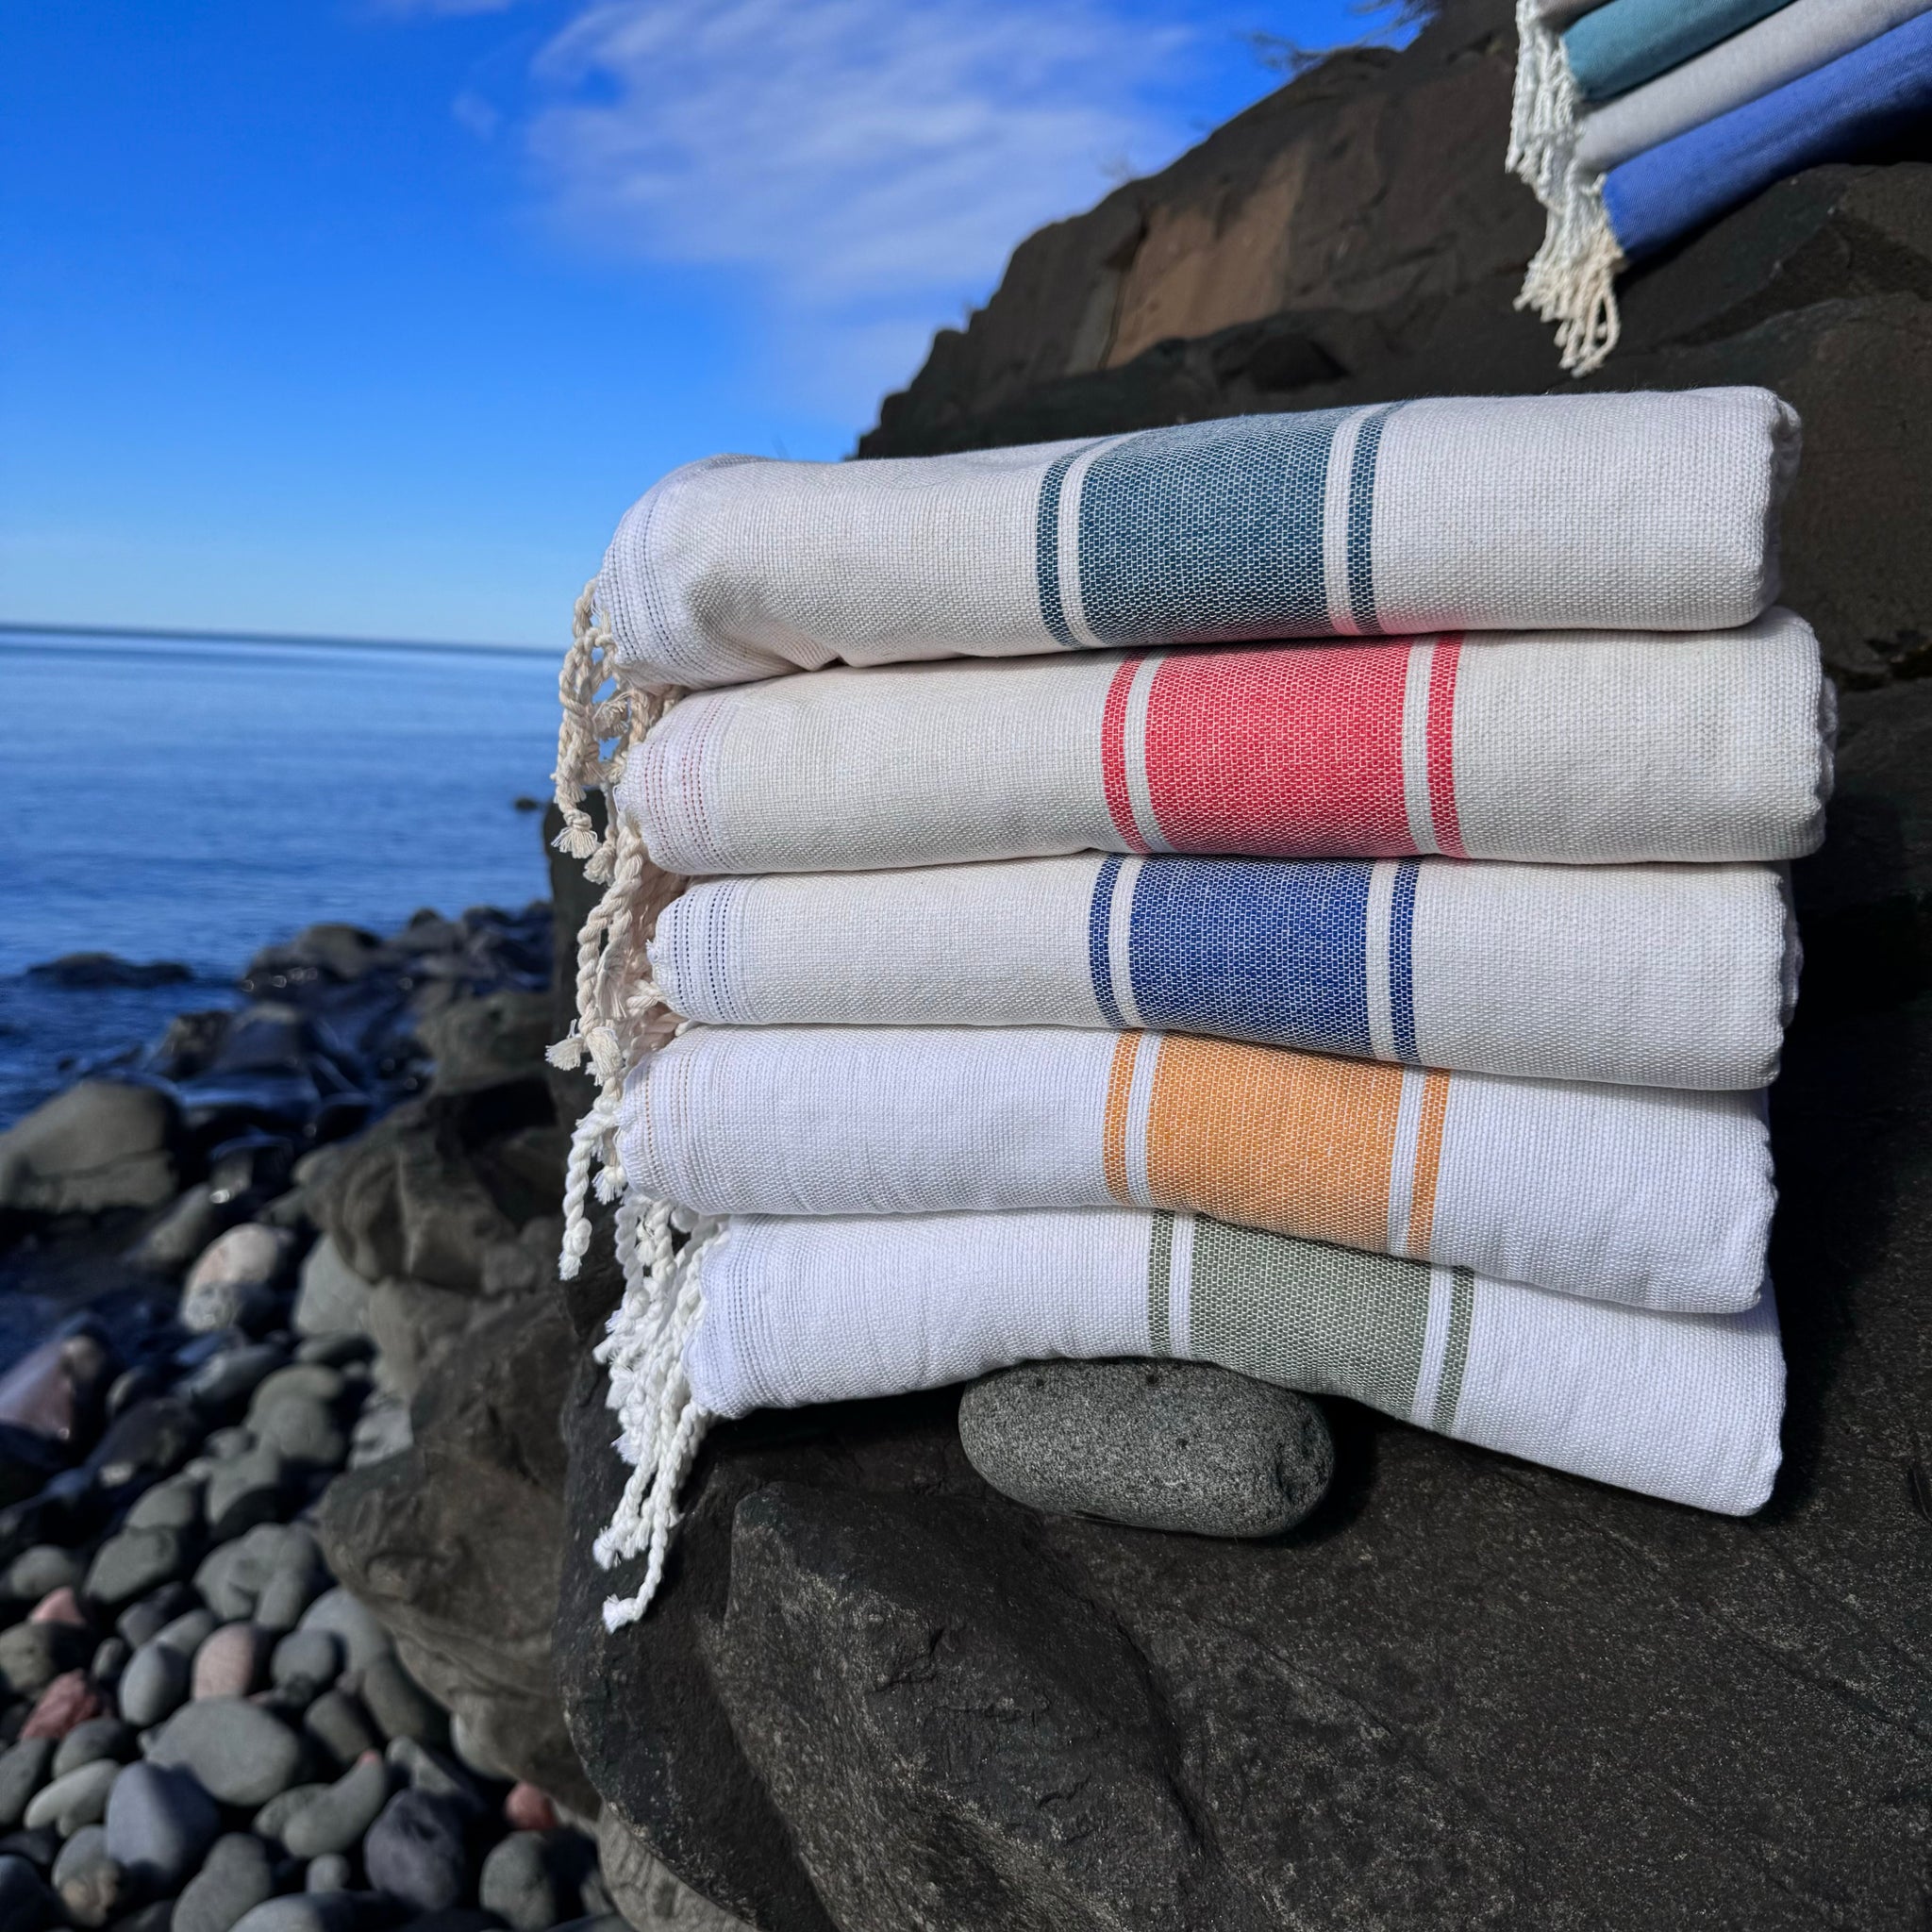 Cyclades Sauna, Beach or Bath Towel by Foutas